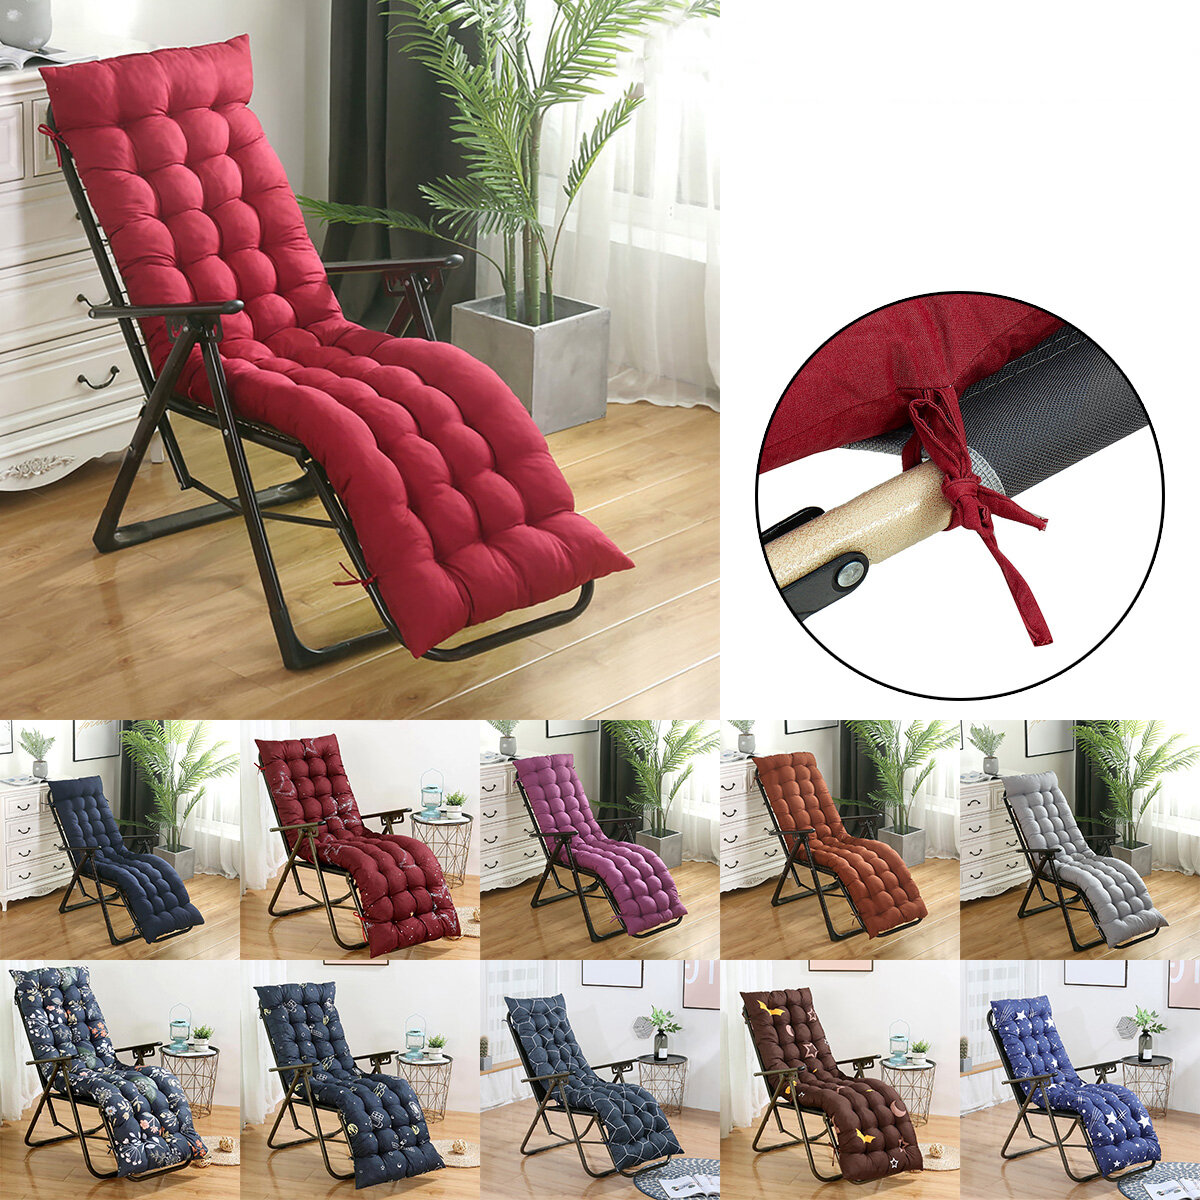 Almofada de cadeira de lounge universal acolchoada com almofada de encosto alto e macia para cadeira de balanço interna e externa.